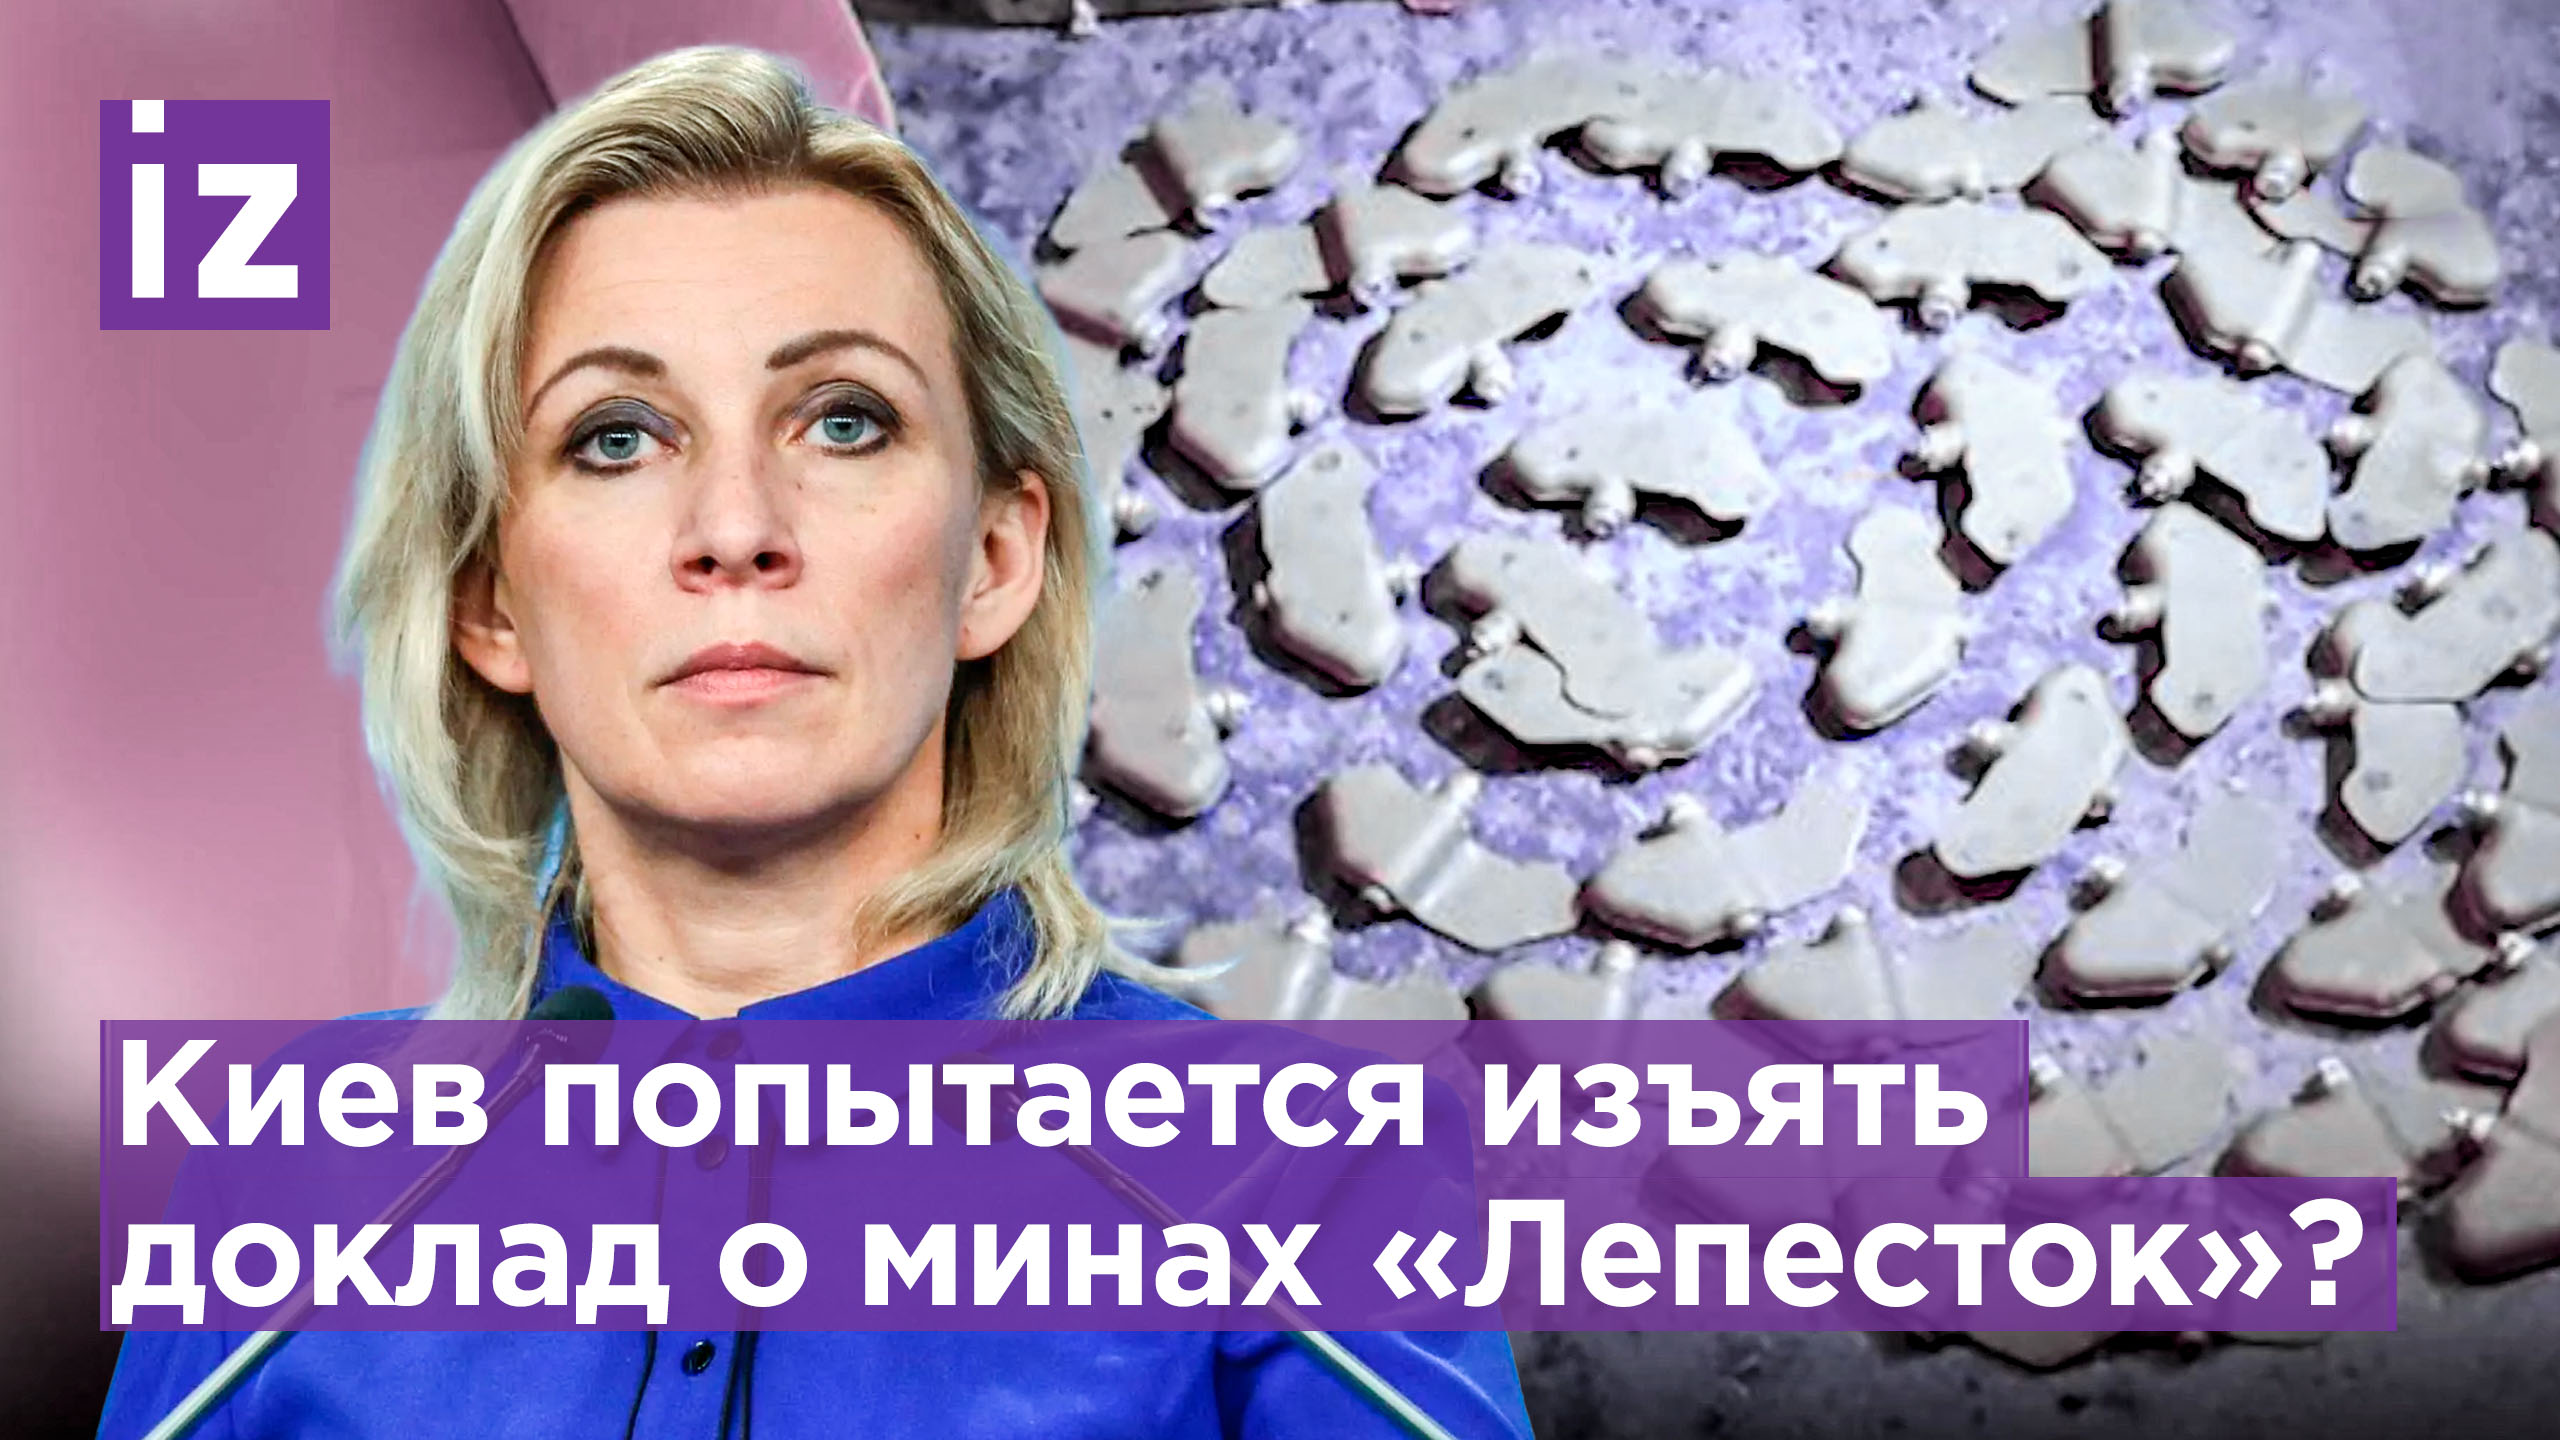 Захарова: доклад HRW о минах «Лепесток» могут изъять из западных СМИ / Известия